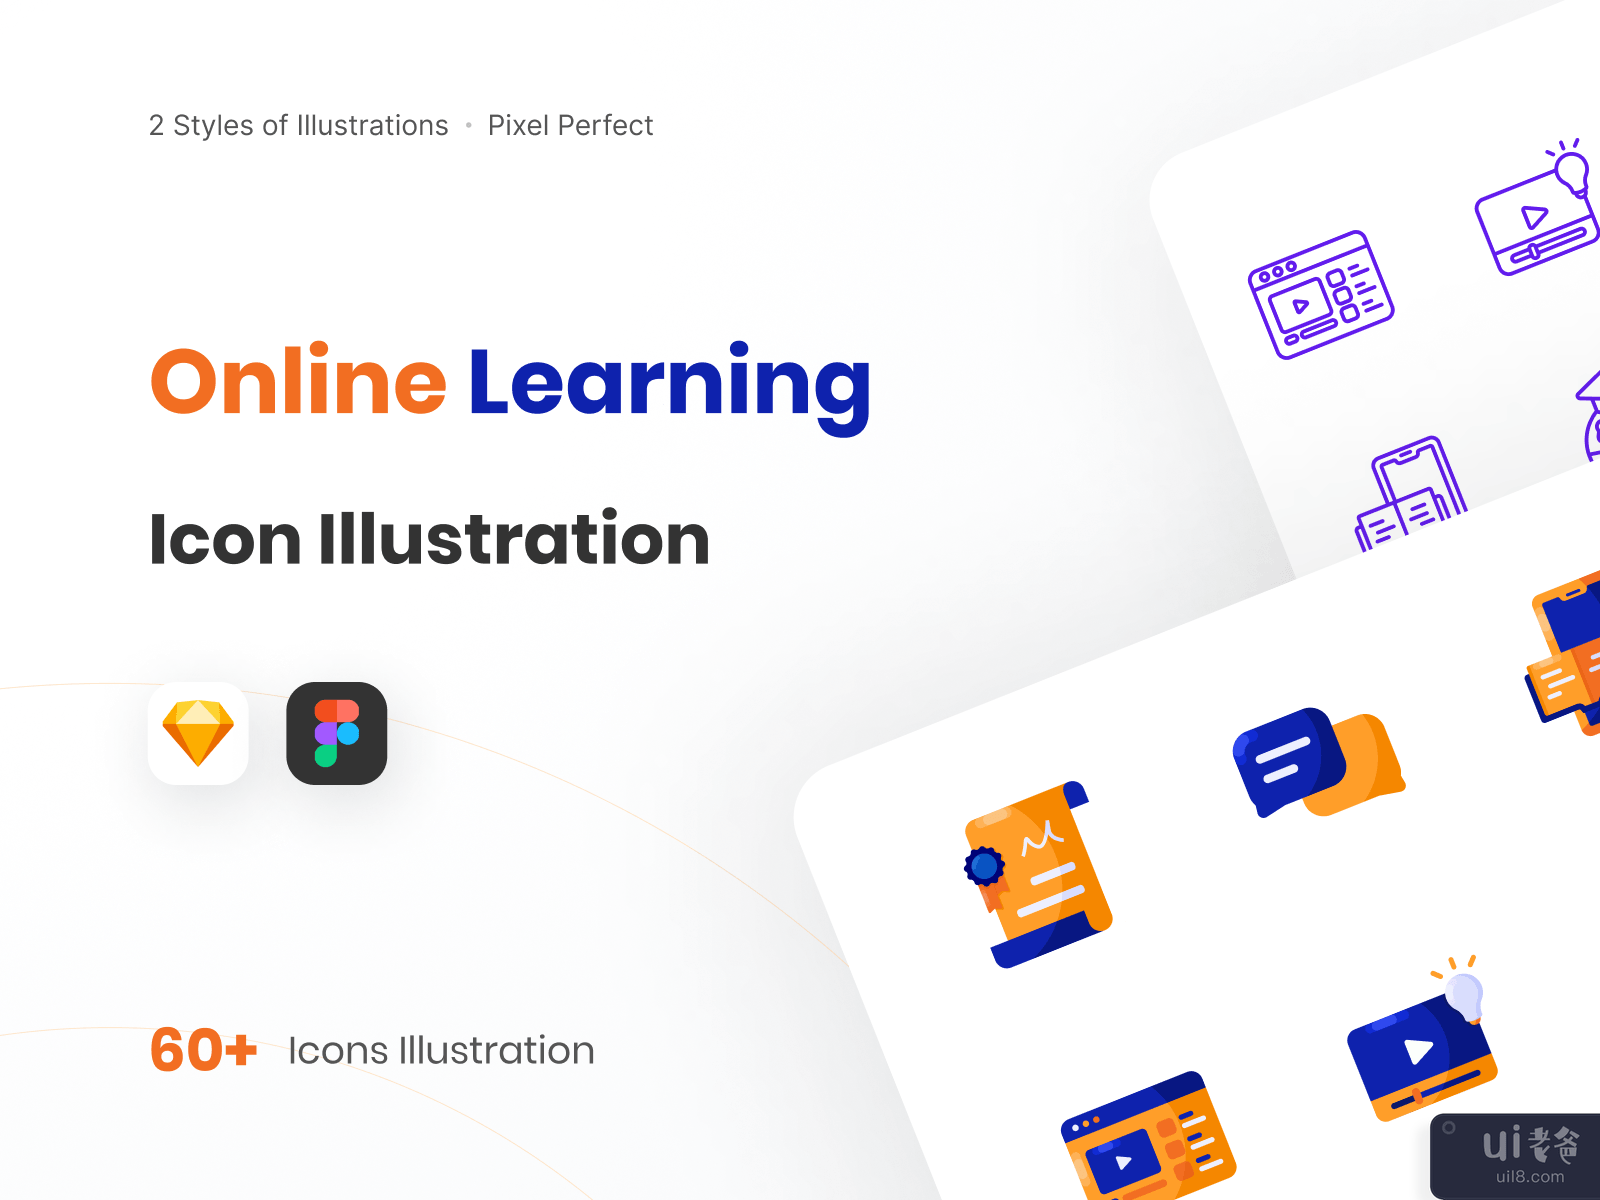 在线学习图标说明-线条样式(Online Learning Icon Illustration - Line Style)插图